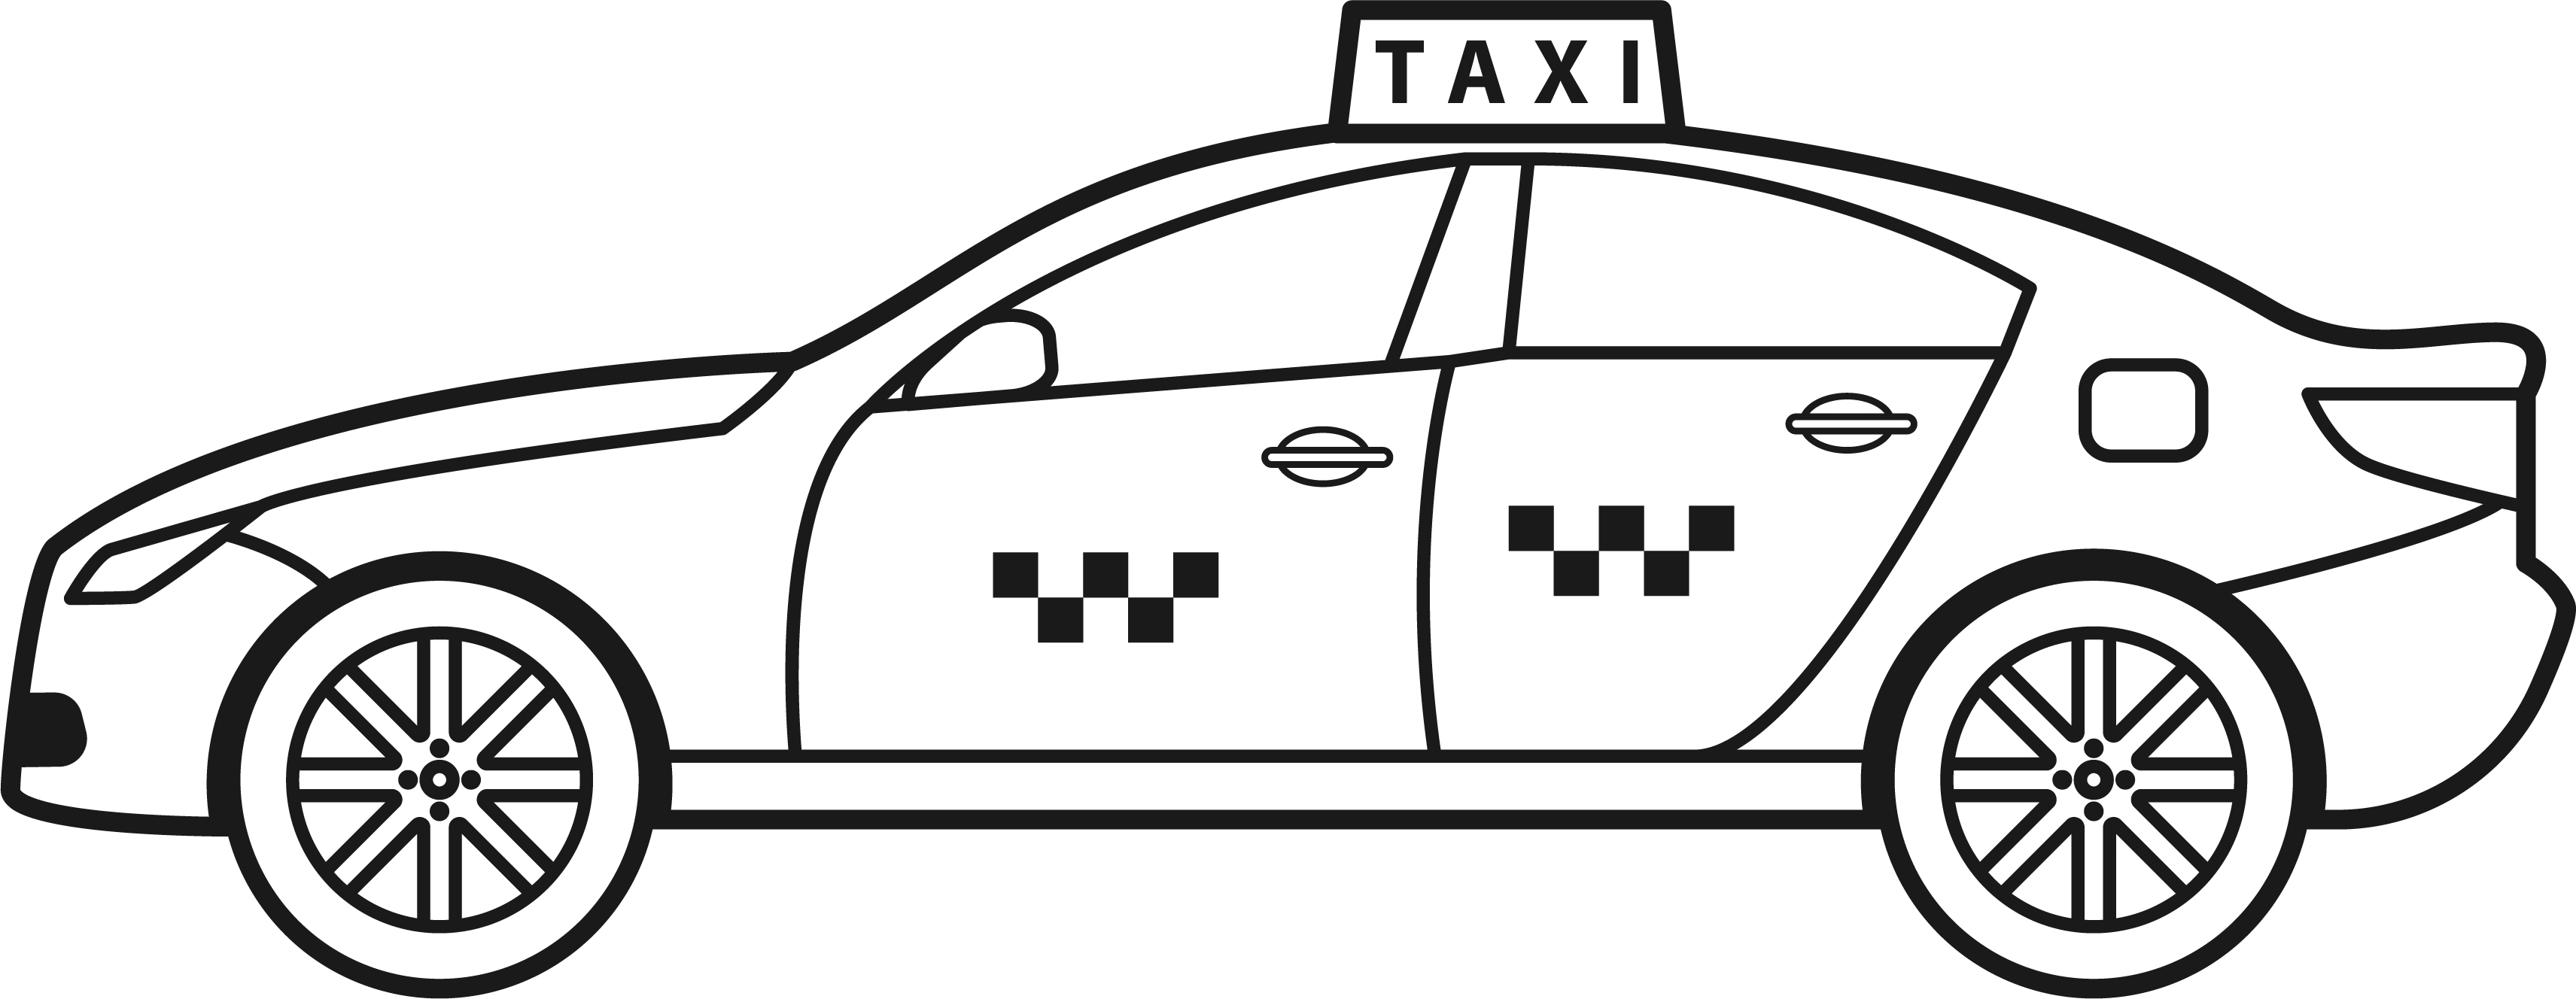 Раскраска машина такси формата А4 в высоком качестве